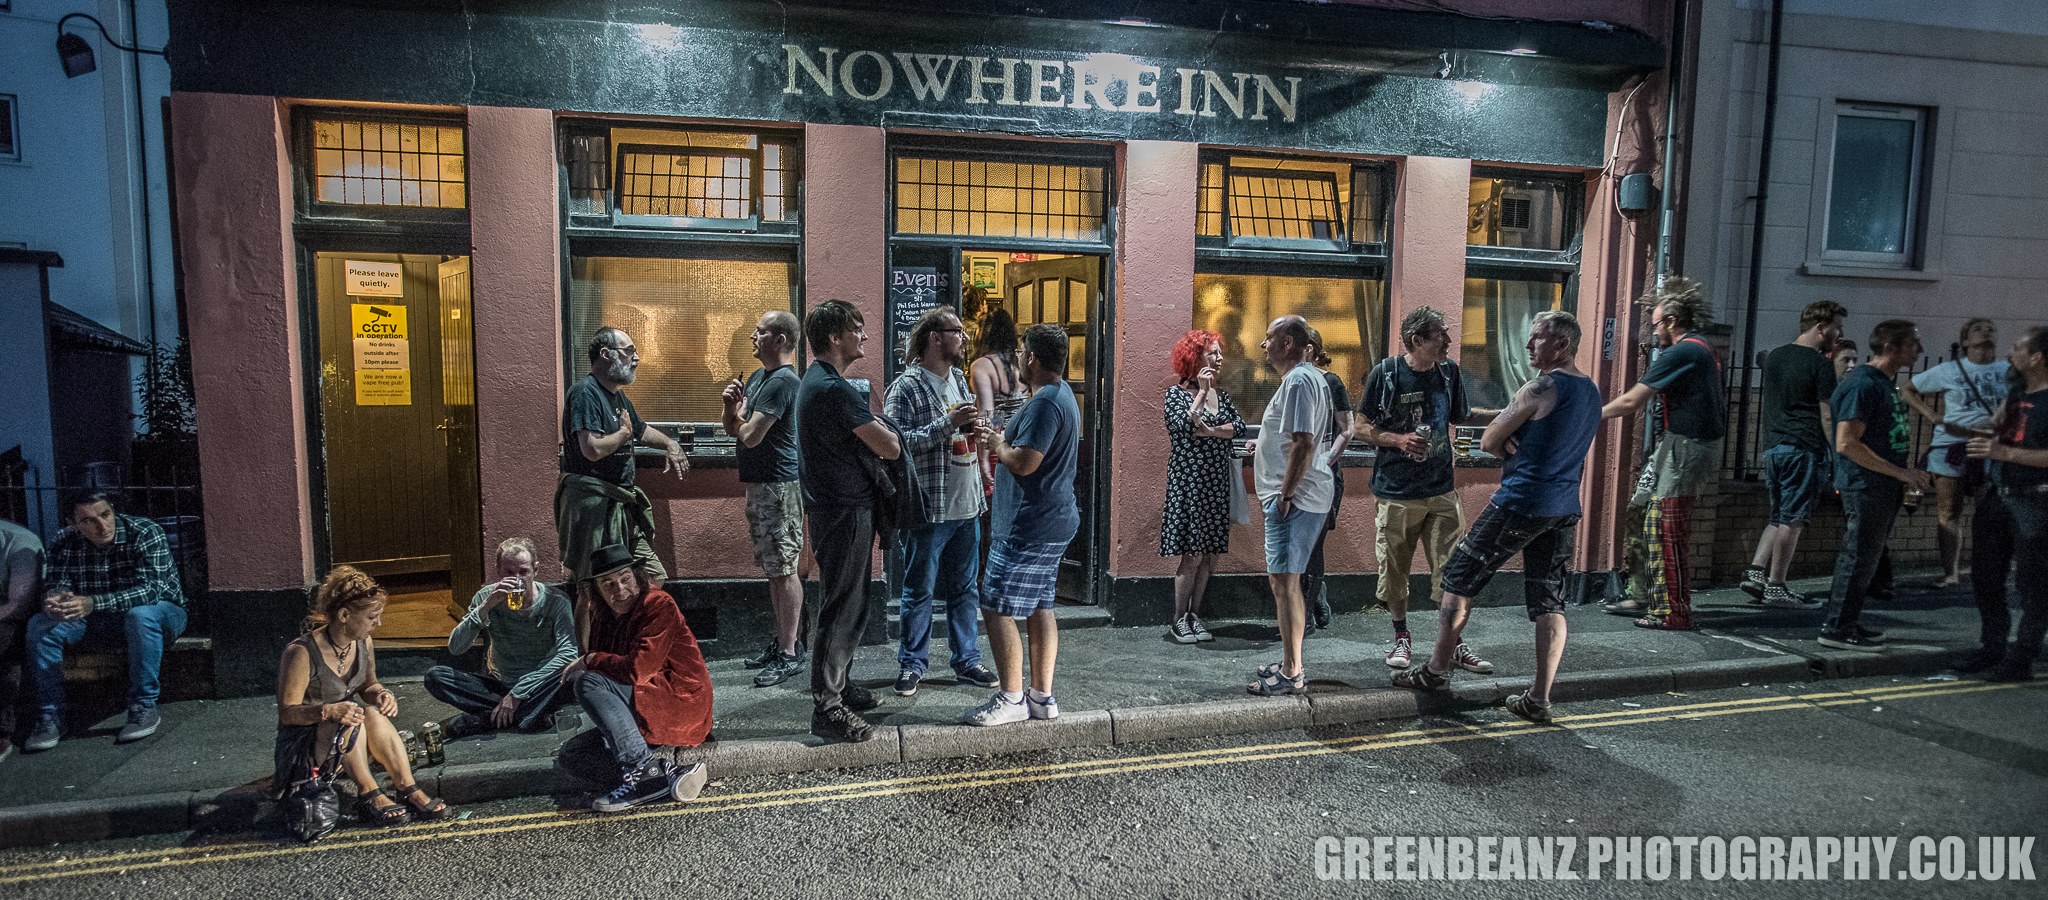 Fans outside The Nowhere Inn during Phil Fest 2018